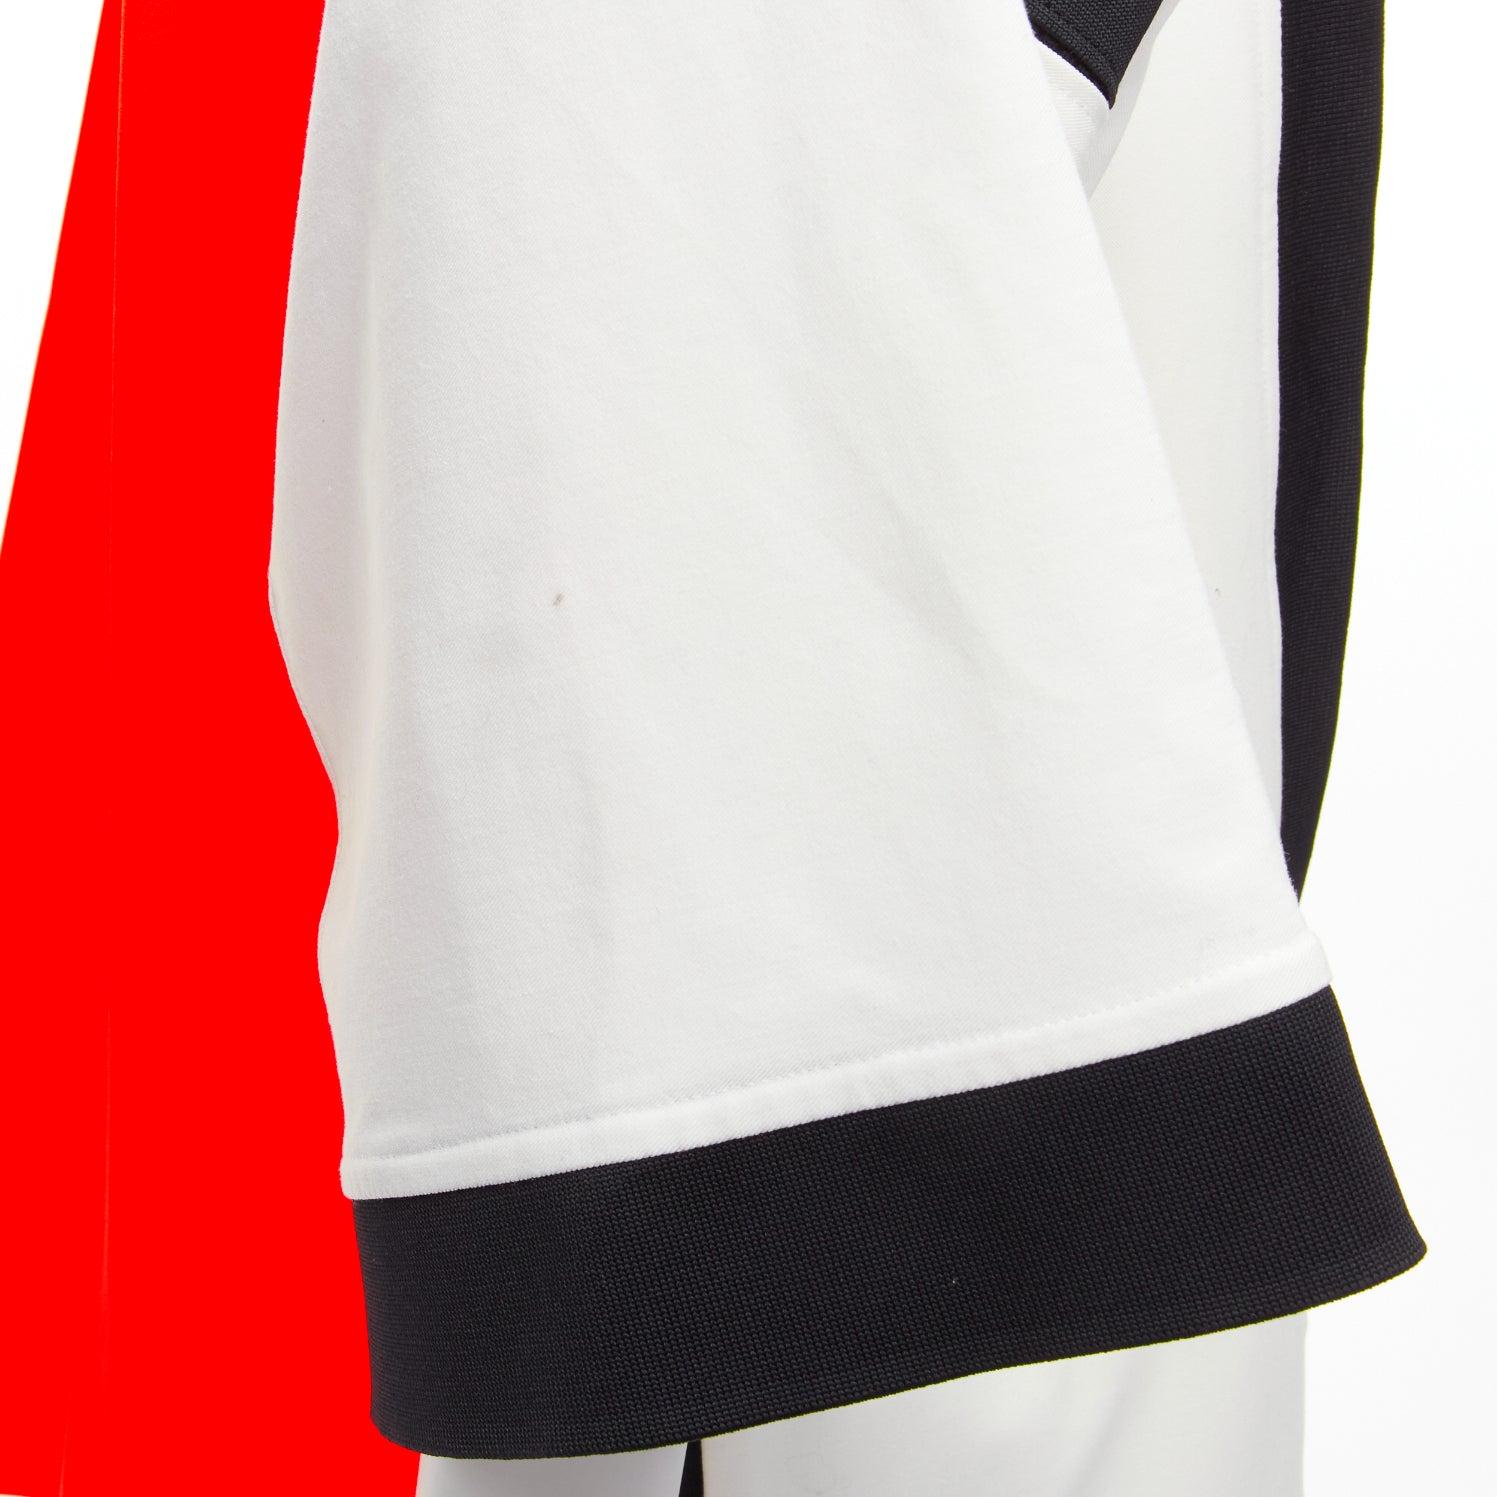 AMBUSh NIKE LAB 2019 orange logo badge kimono sleeve football jersey jacket XS For Sale 2